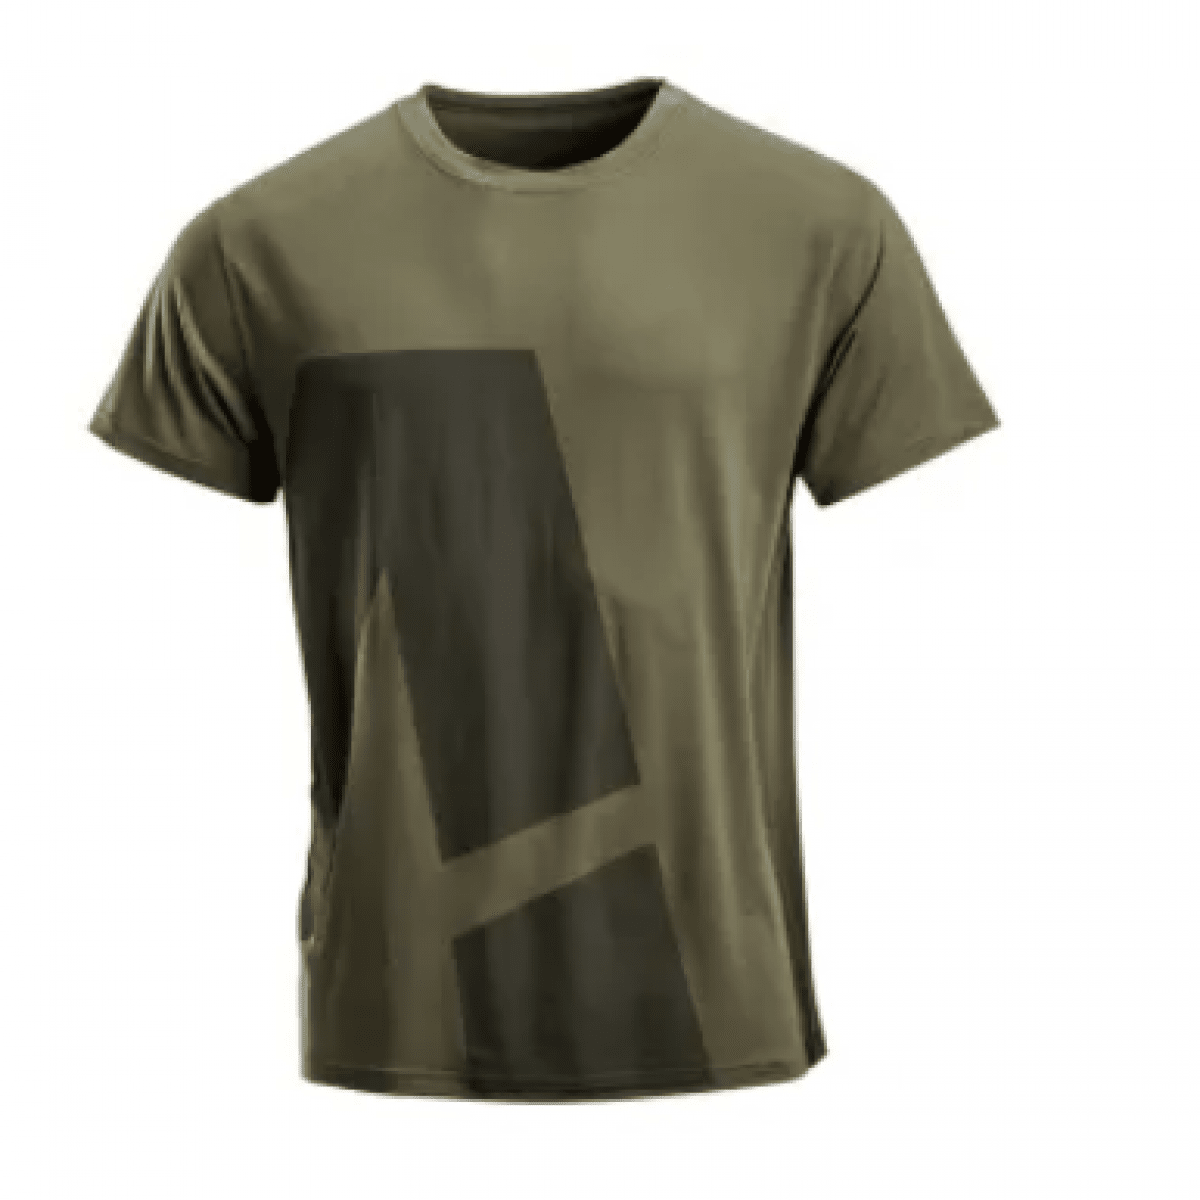 GK/KW506802202060 Pánske tričko s krátkym rukávom,zelené,veľ 2XL